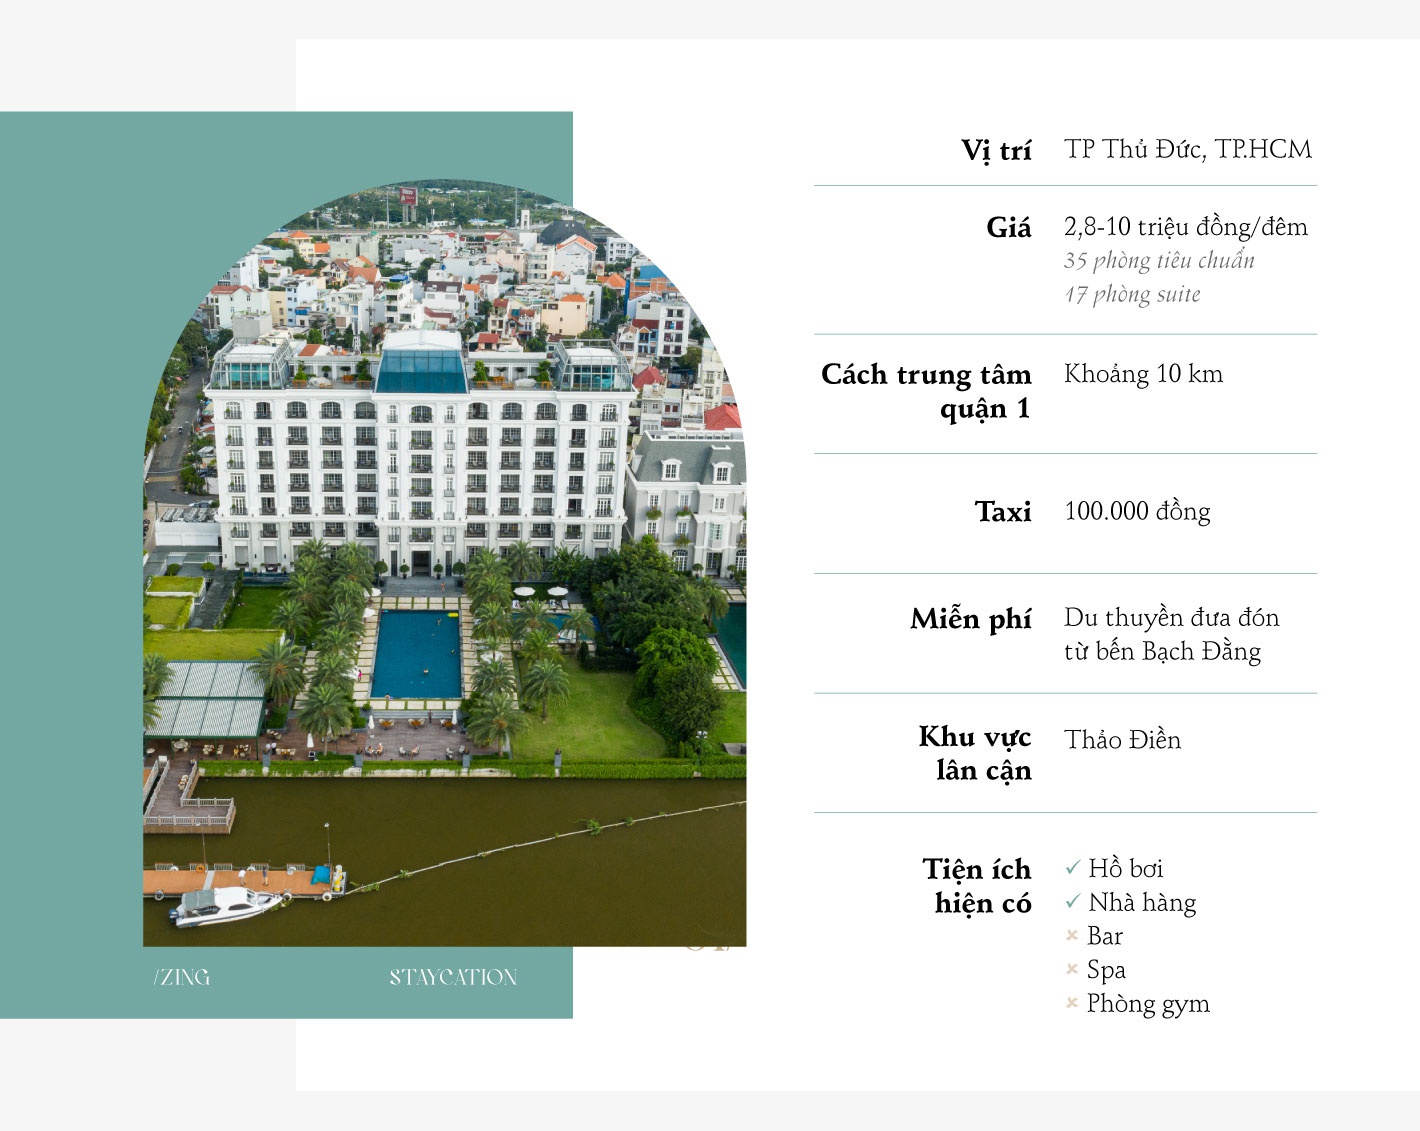 staycation tai tphcm anh 1  - anh_giua_1_1 - Kỳ nghỉ tại chỗ ở khách sạn 5 sao bên sông Sài Gòn